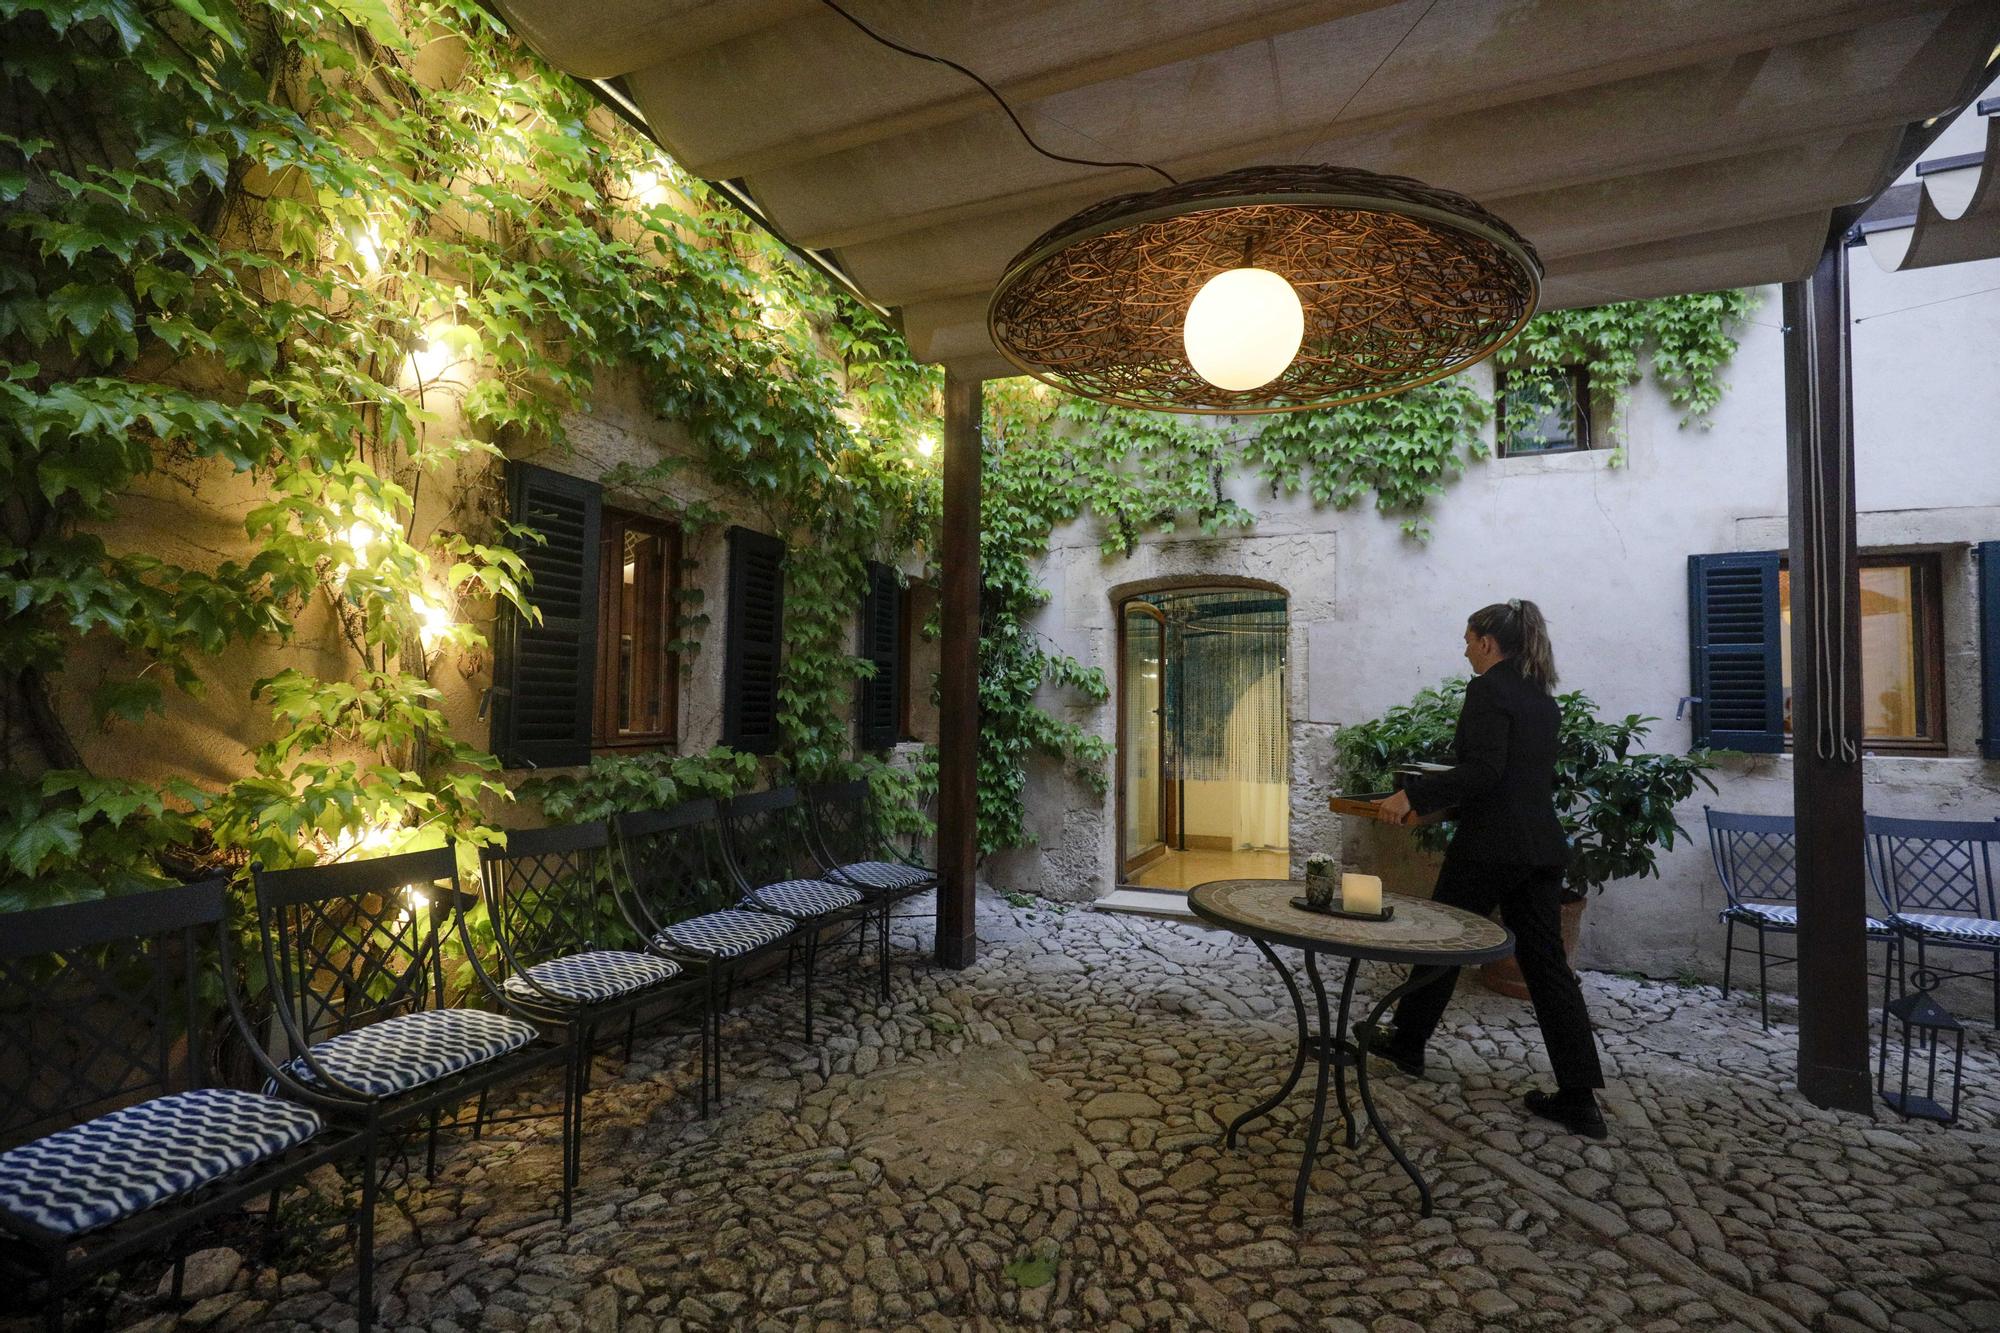 Schlemmen auf hohem Niveau im Sternerestaurant von Andreu Genestra